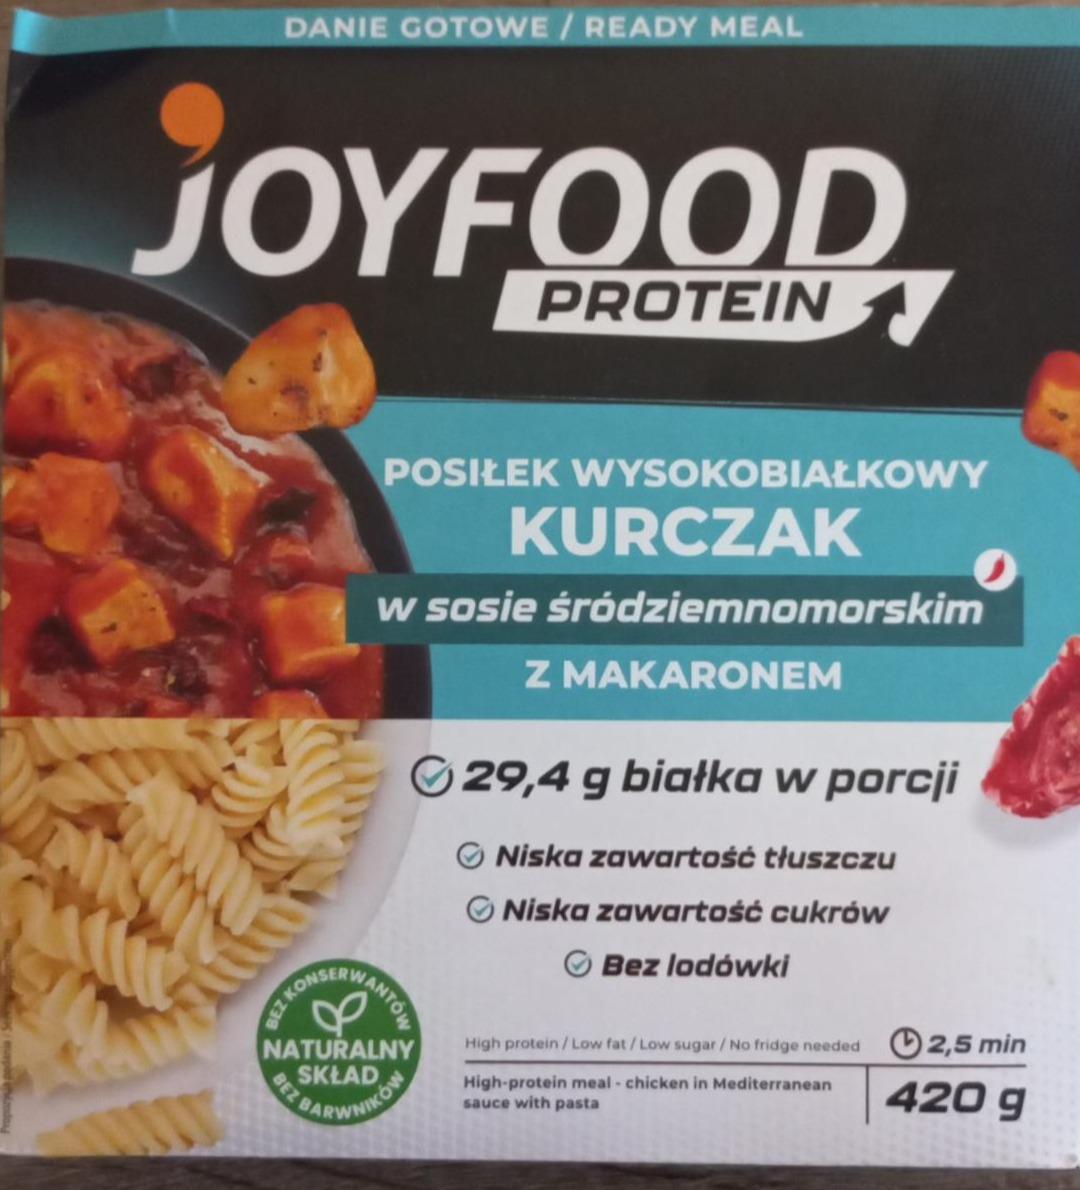 Zdjęcia - Posiłek wysokobiałkowy kurczak w sosie śródziemnomorskim z makaronem Joyfood protein